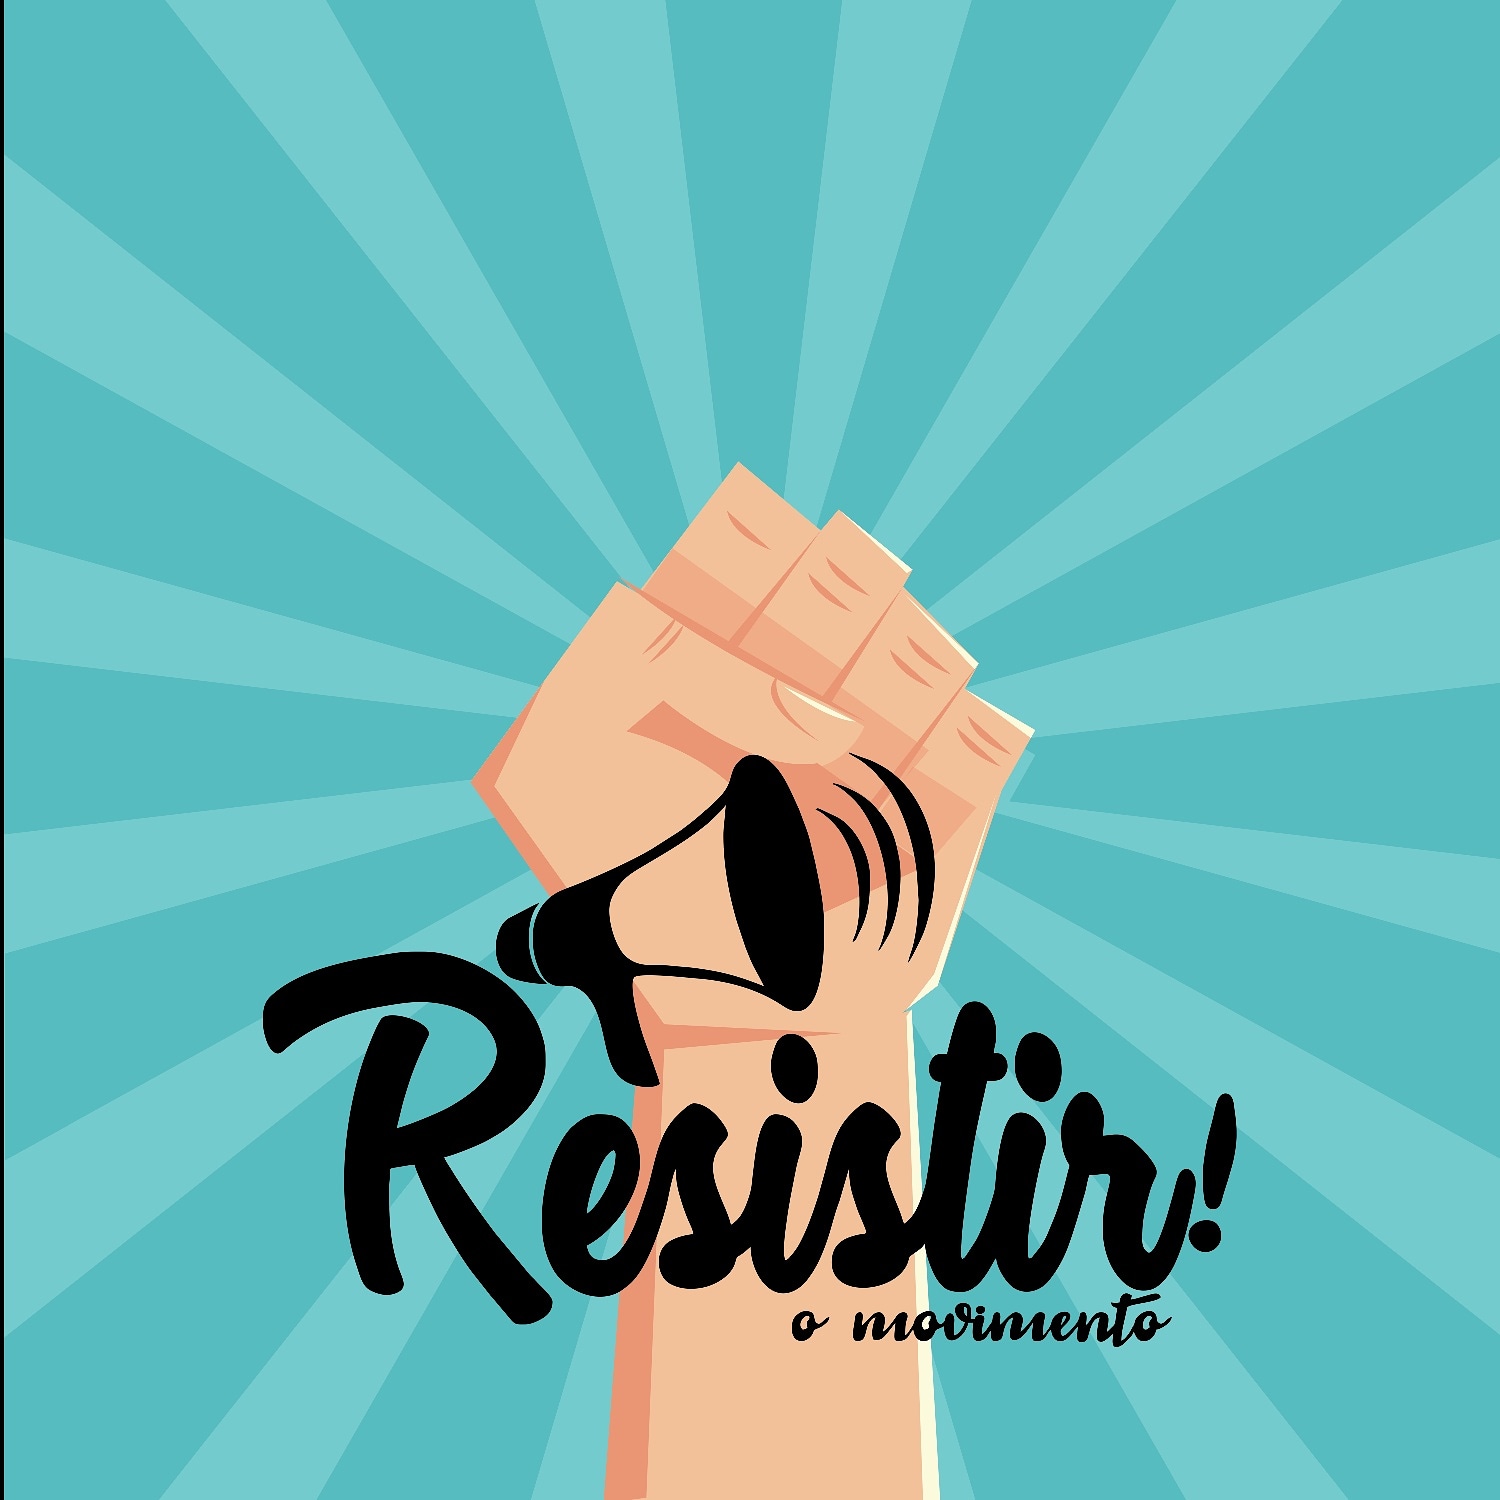 Vaquinha Online - Projetos - Ajude o Movimento Resistir!